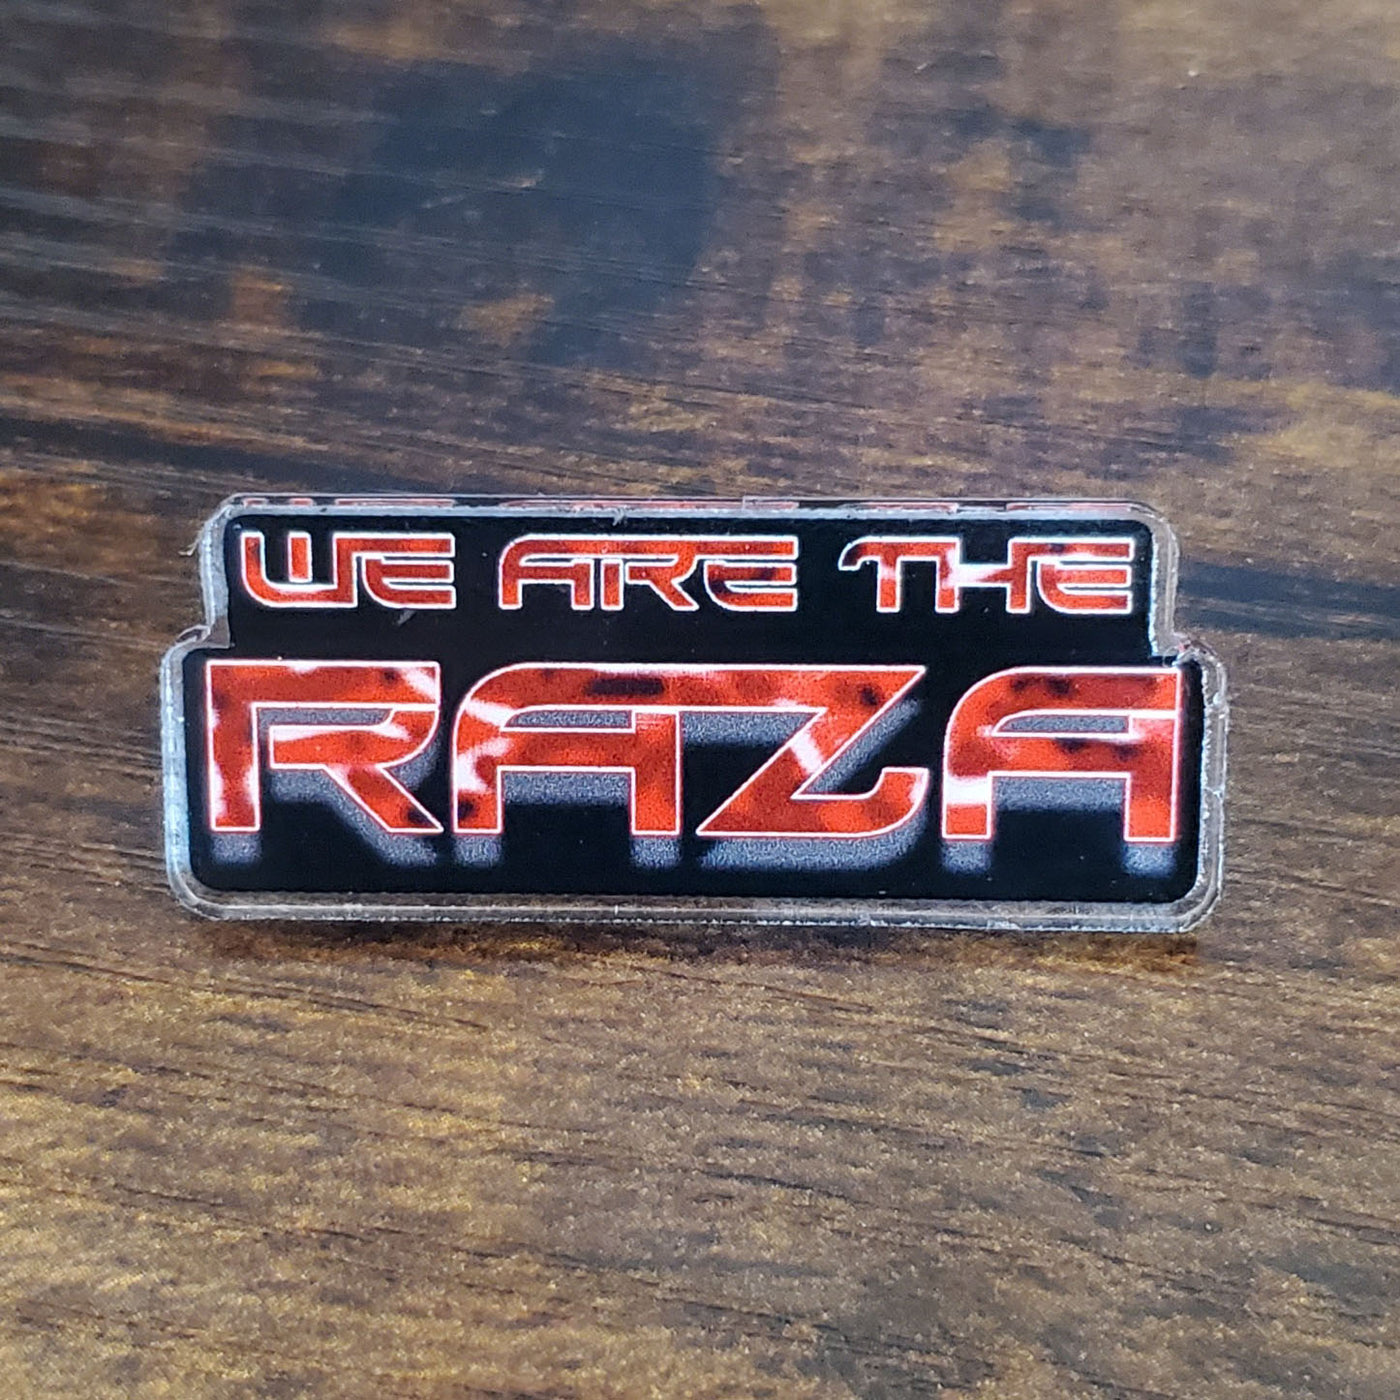 Dark Matter - We Are The Raza - Fan Pin